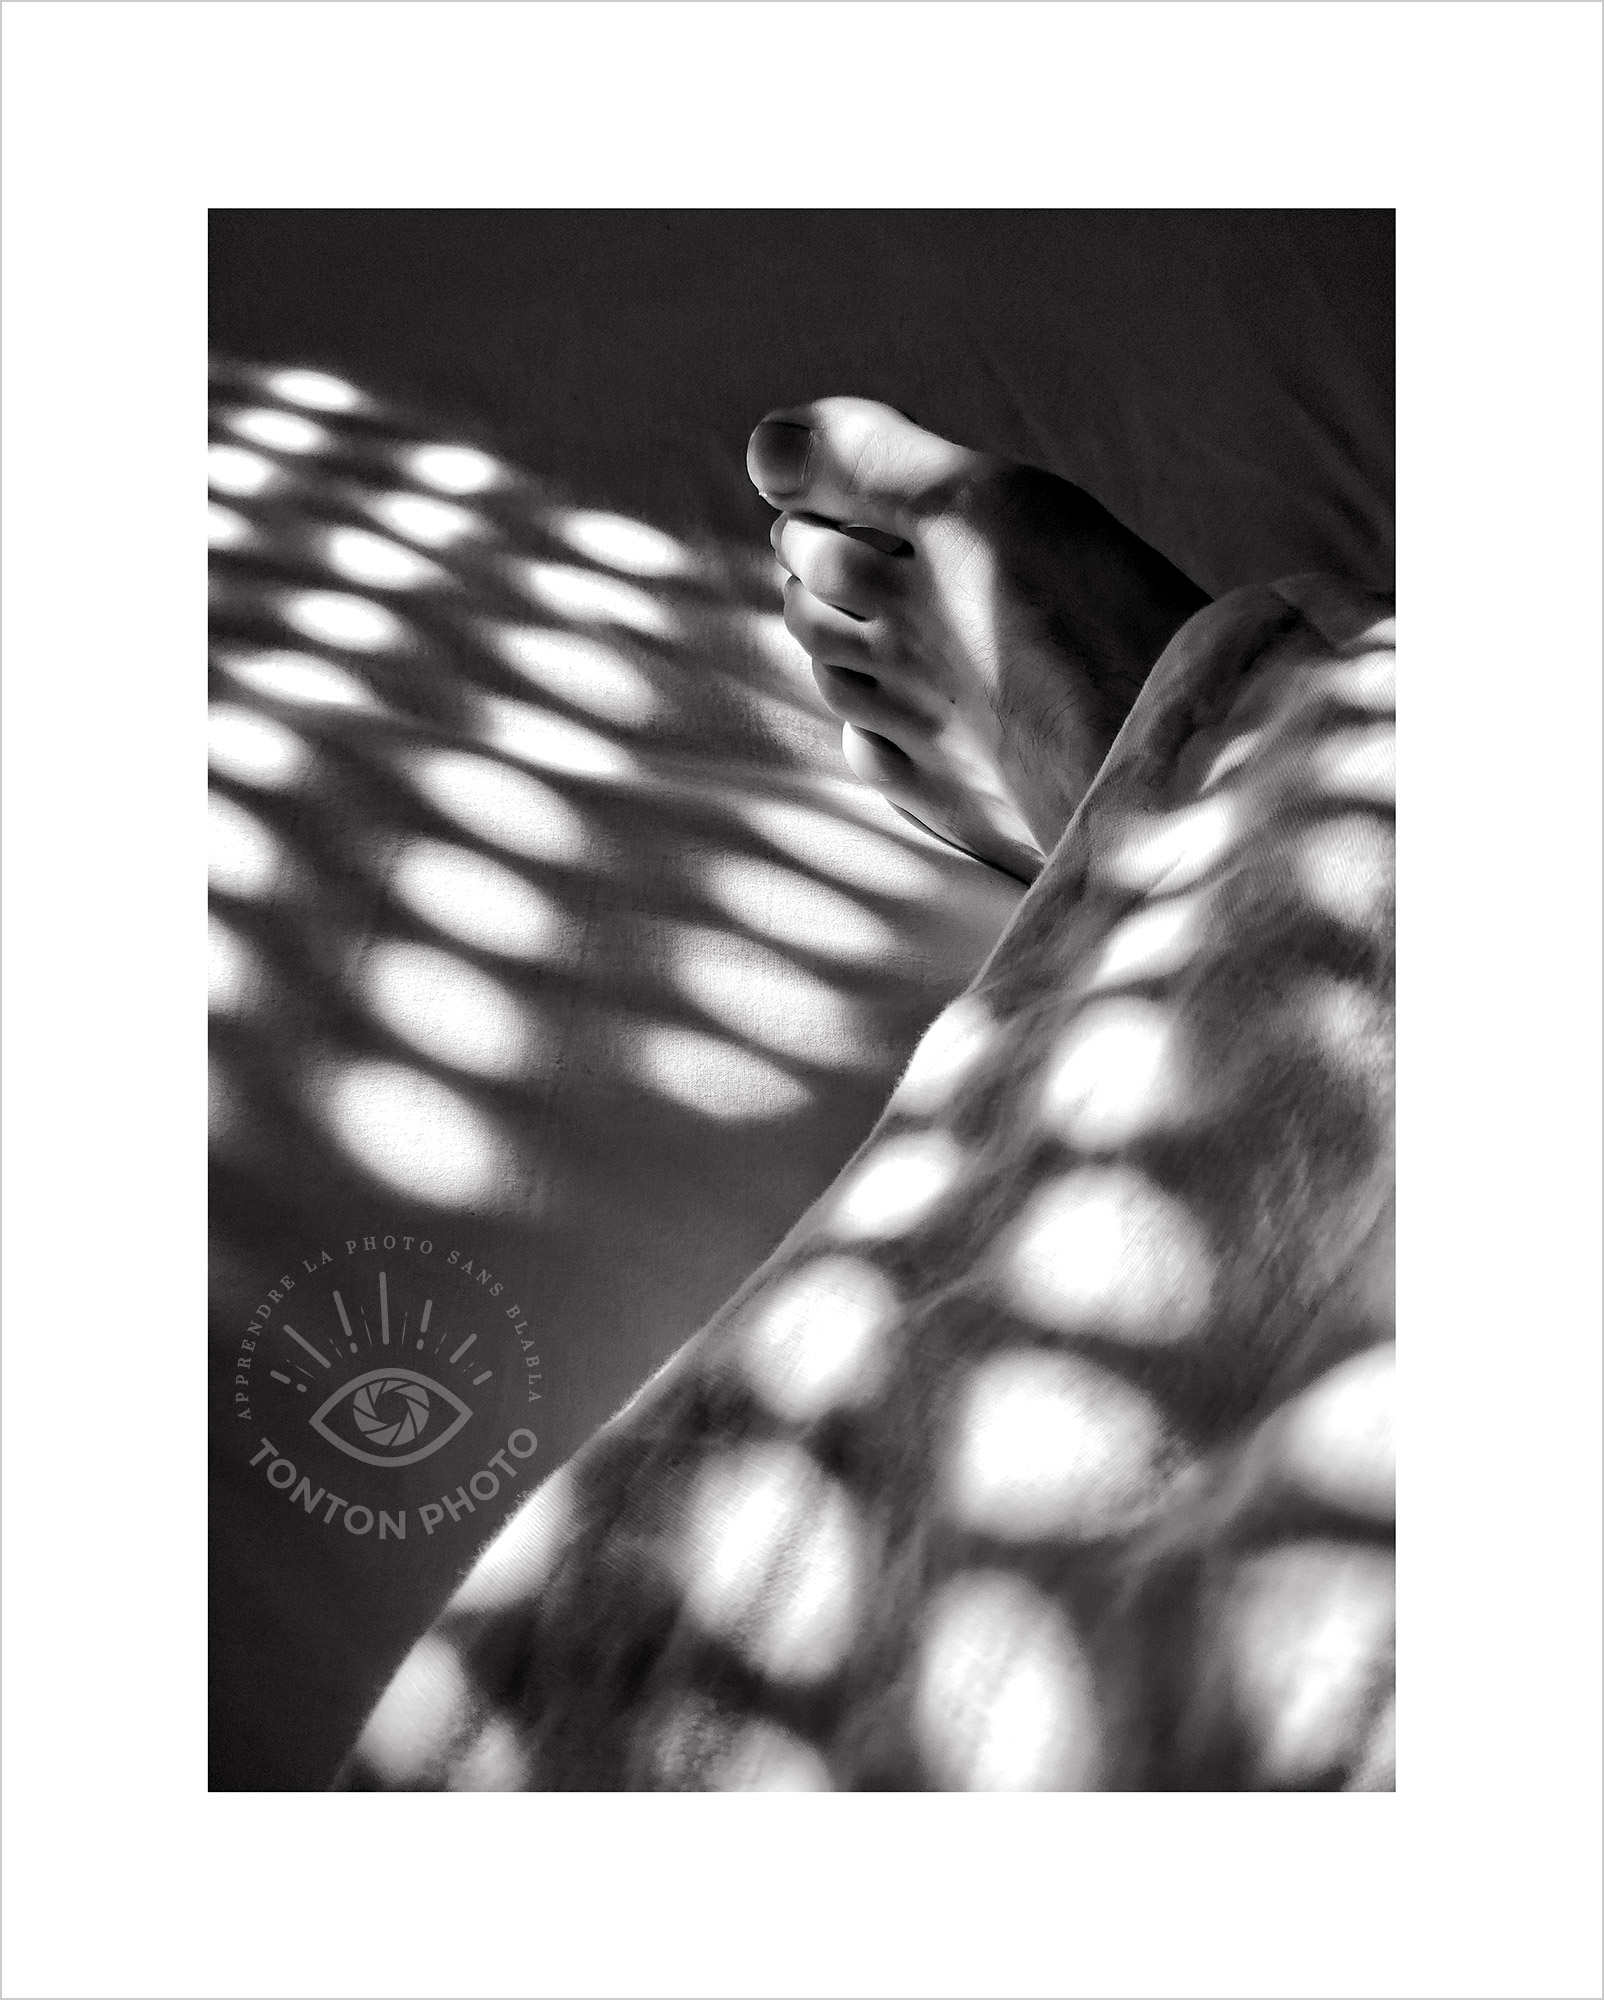 Au lever du jour, jeu d’ombre et de lumière sur les draps à travers les volets de la chambre. Photo prise au smartphone Xiaomi Mi Mix 3 © Tonton Photo